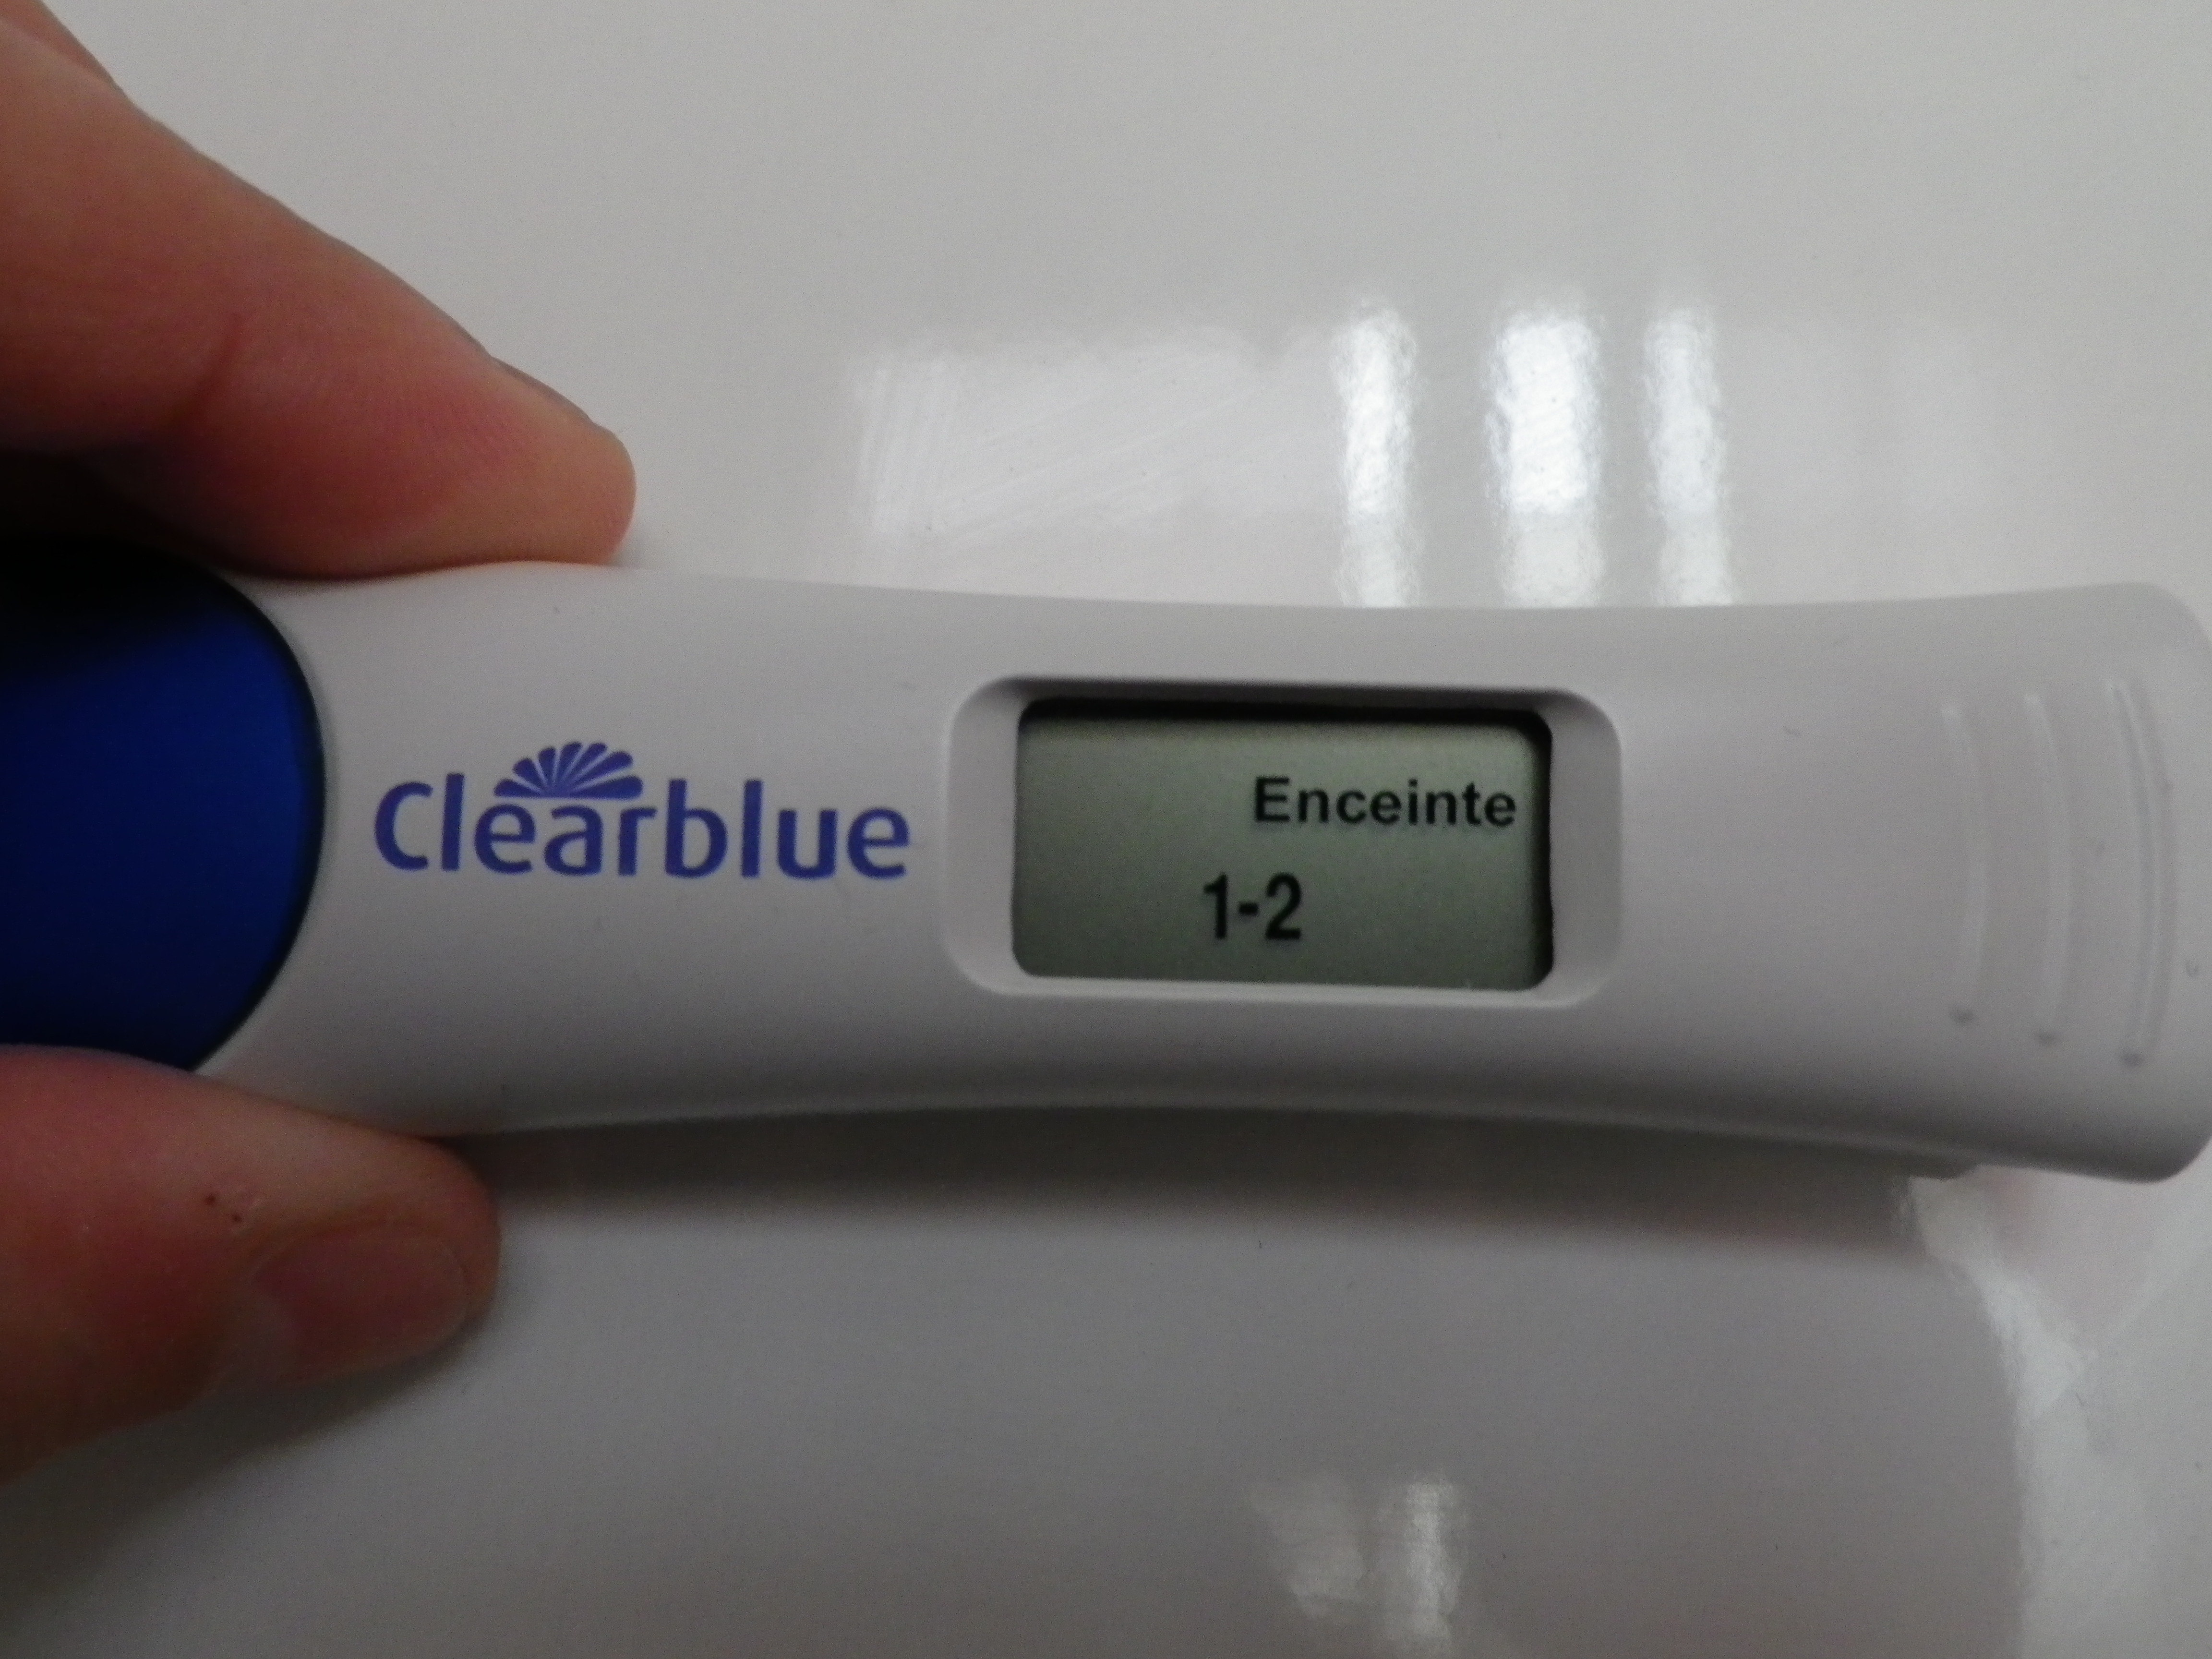 Положительный цифровой тест на беременность фото